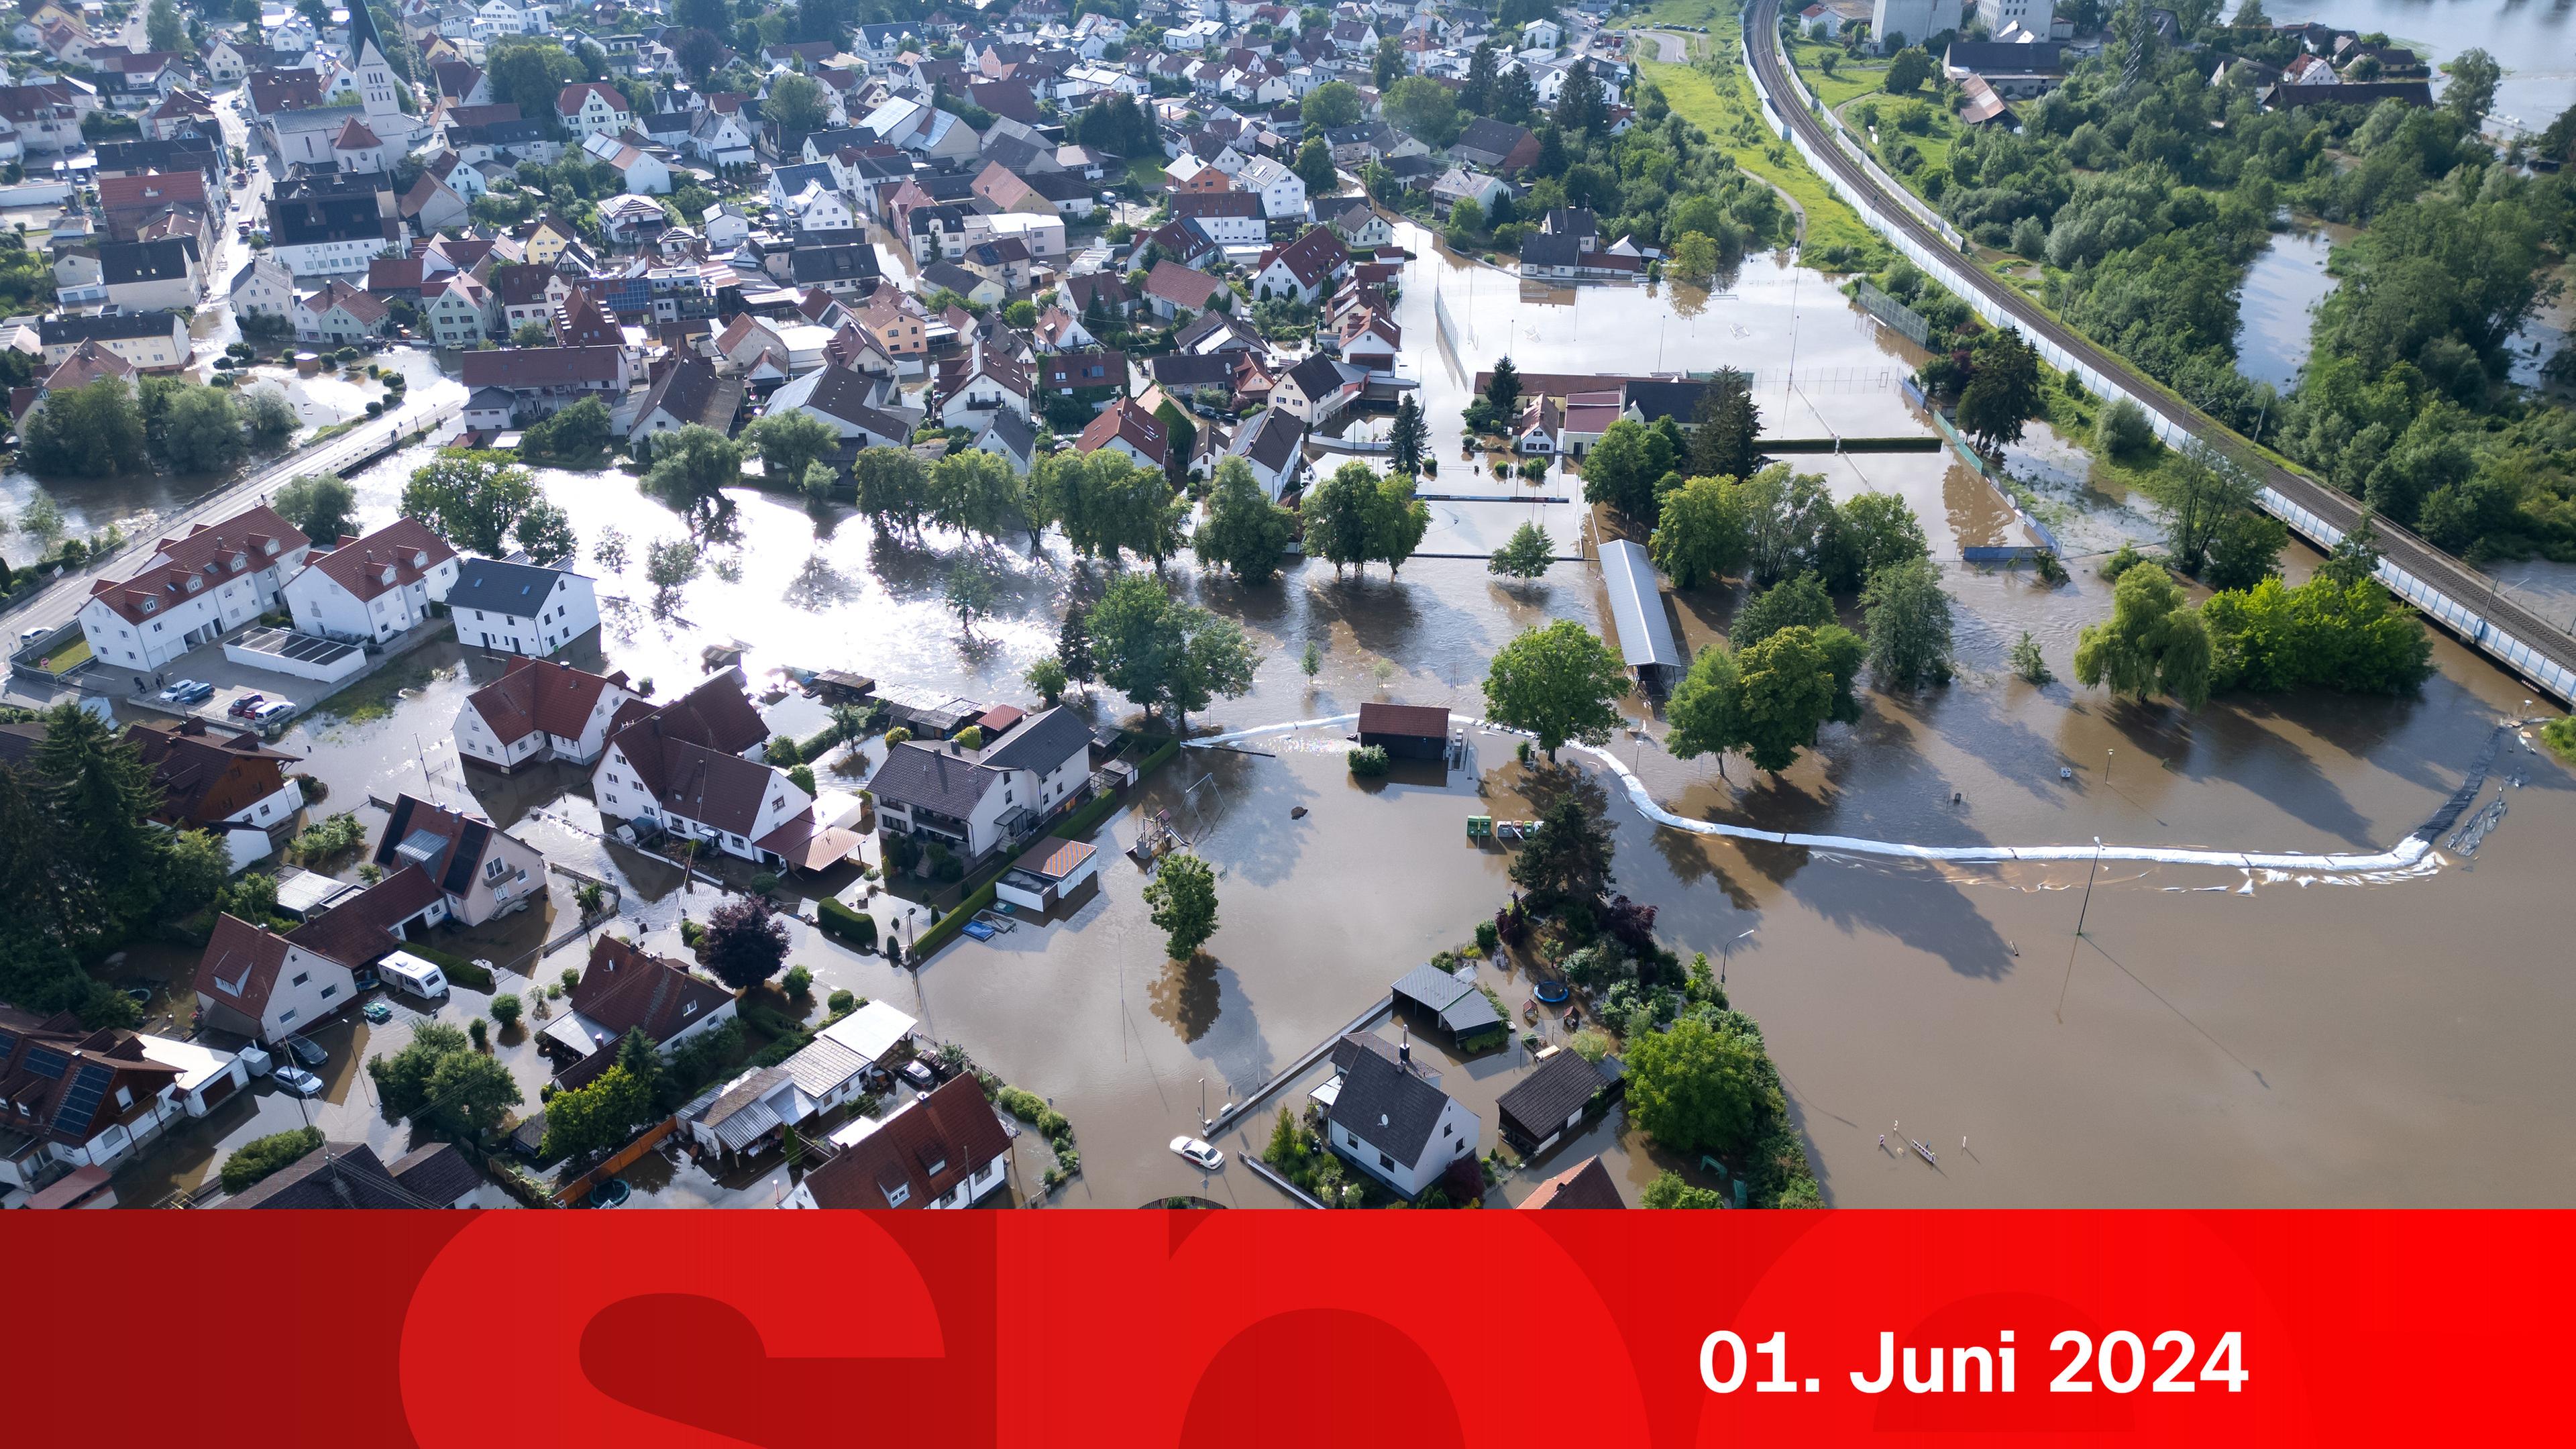 ZDFspezial: Hochwasser in Süddeutschland